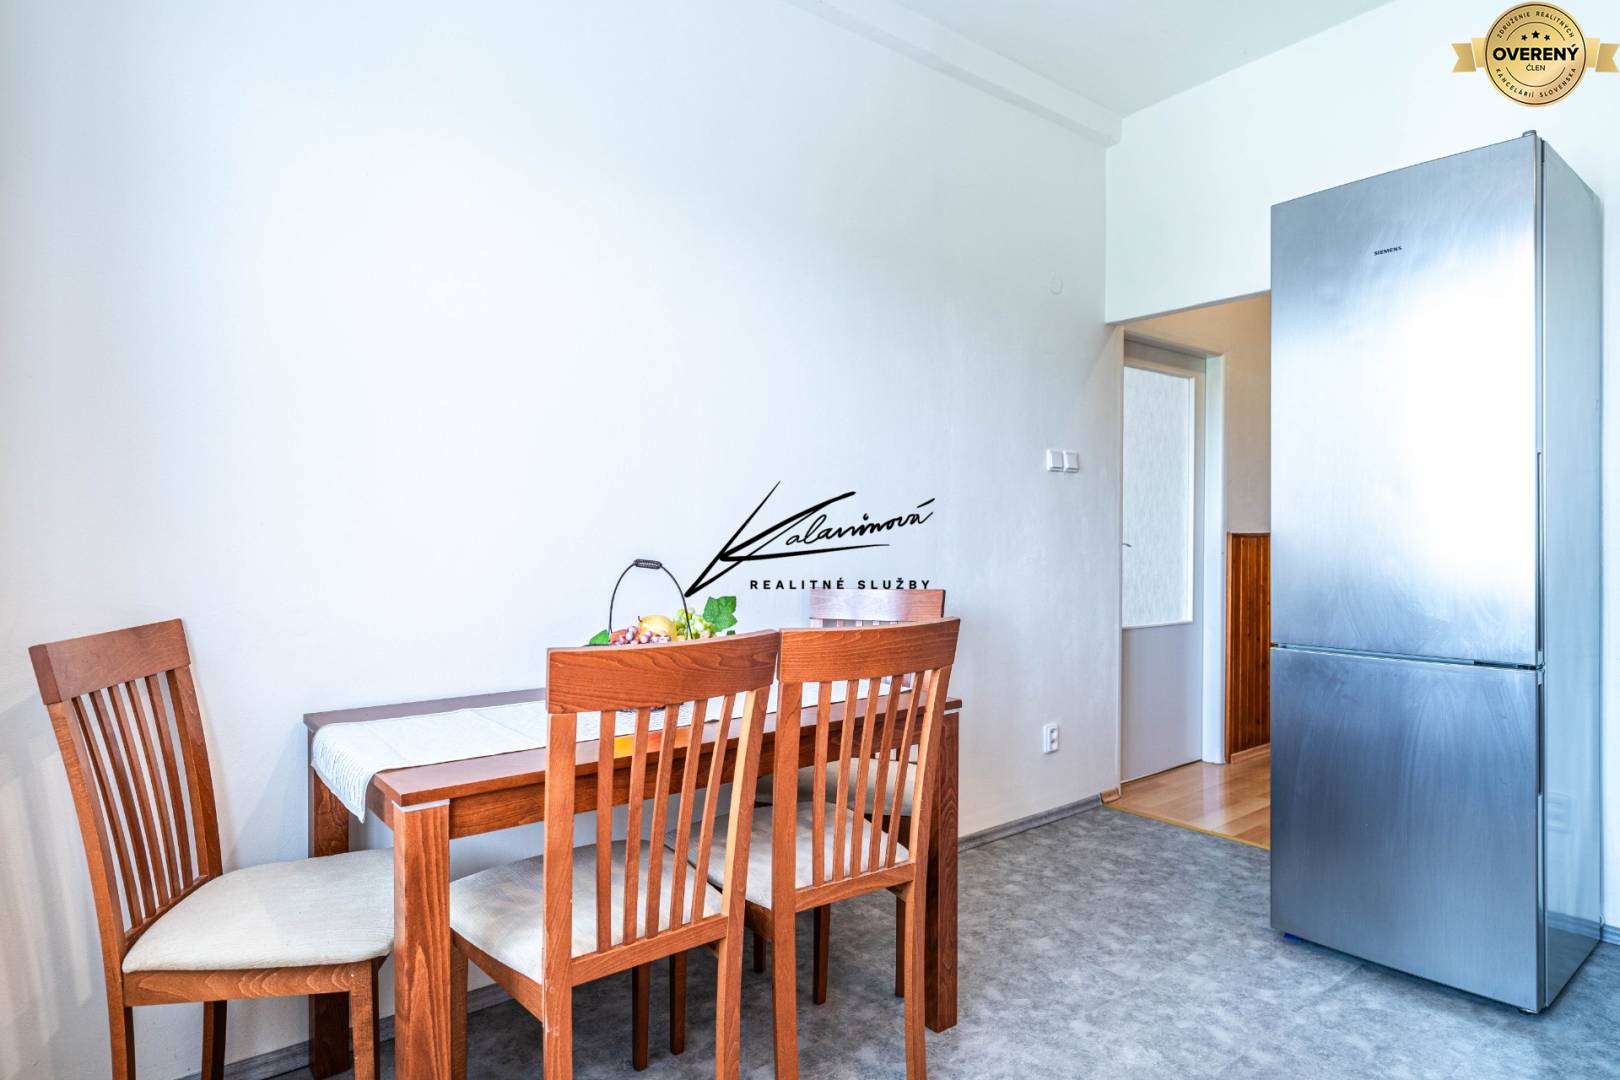 Rent One bedroom apartment, One bedroom apartment, Kisdyho, Košice - S